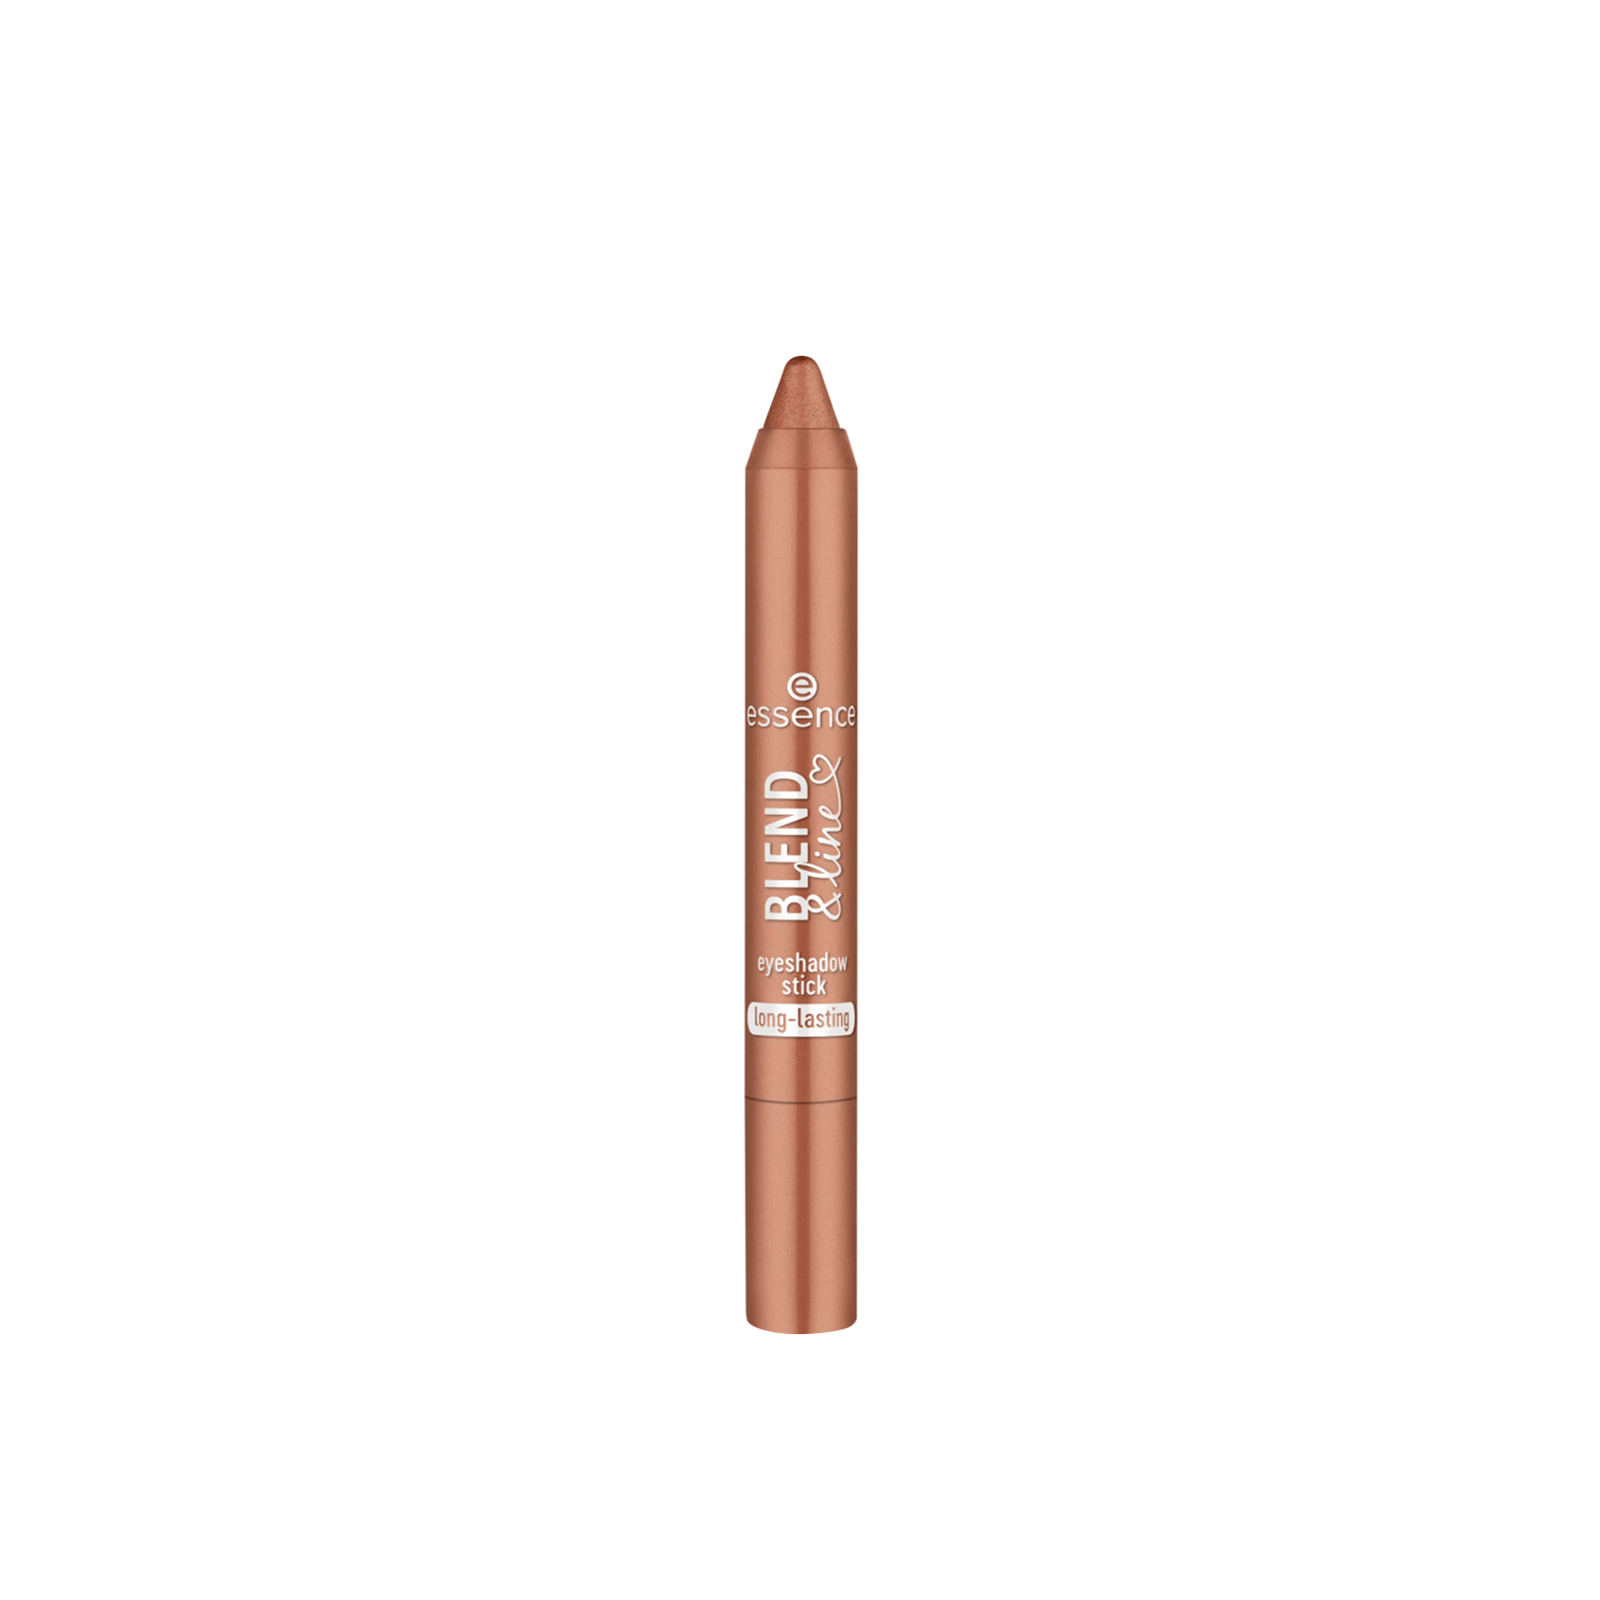 essence Blend & Line Eyeshadow Stick 01 Copper Feels 1.8g (0.06 oz)